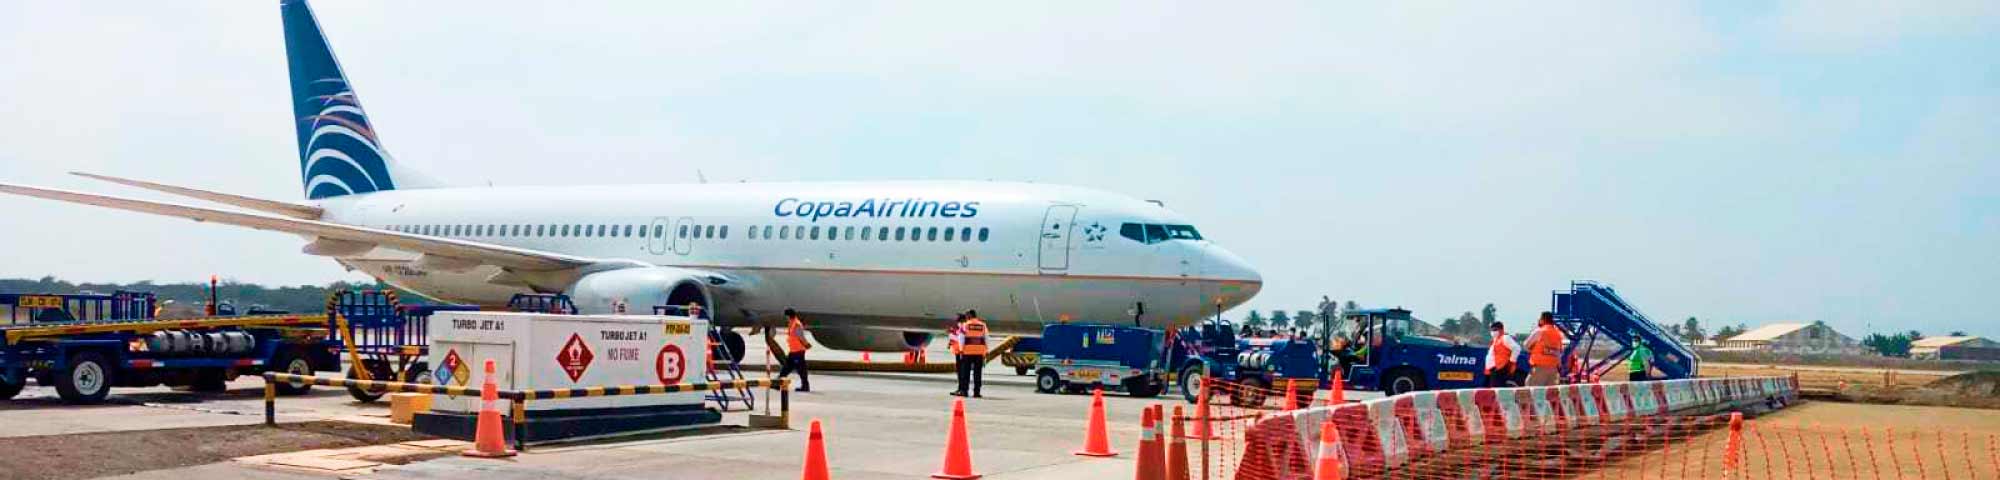 Se reinicia vuelo Panamá-Chiclayo como parte de la reactivación del turismo